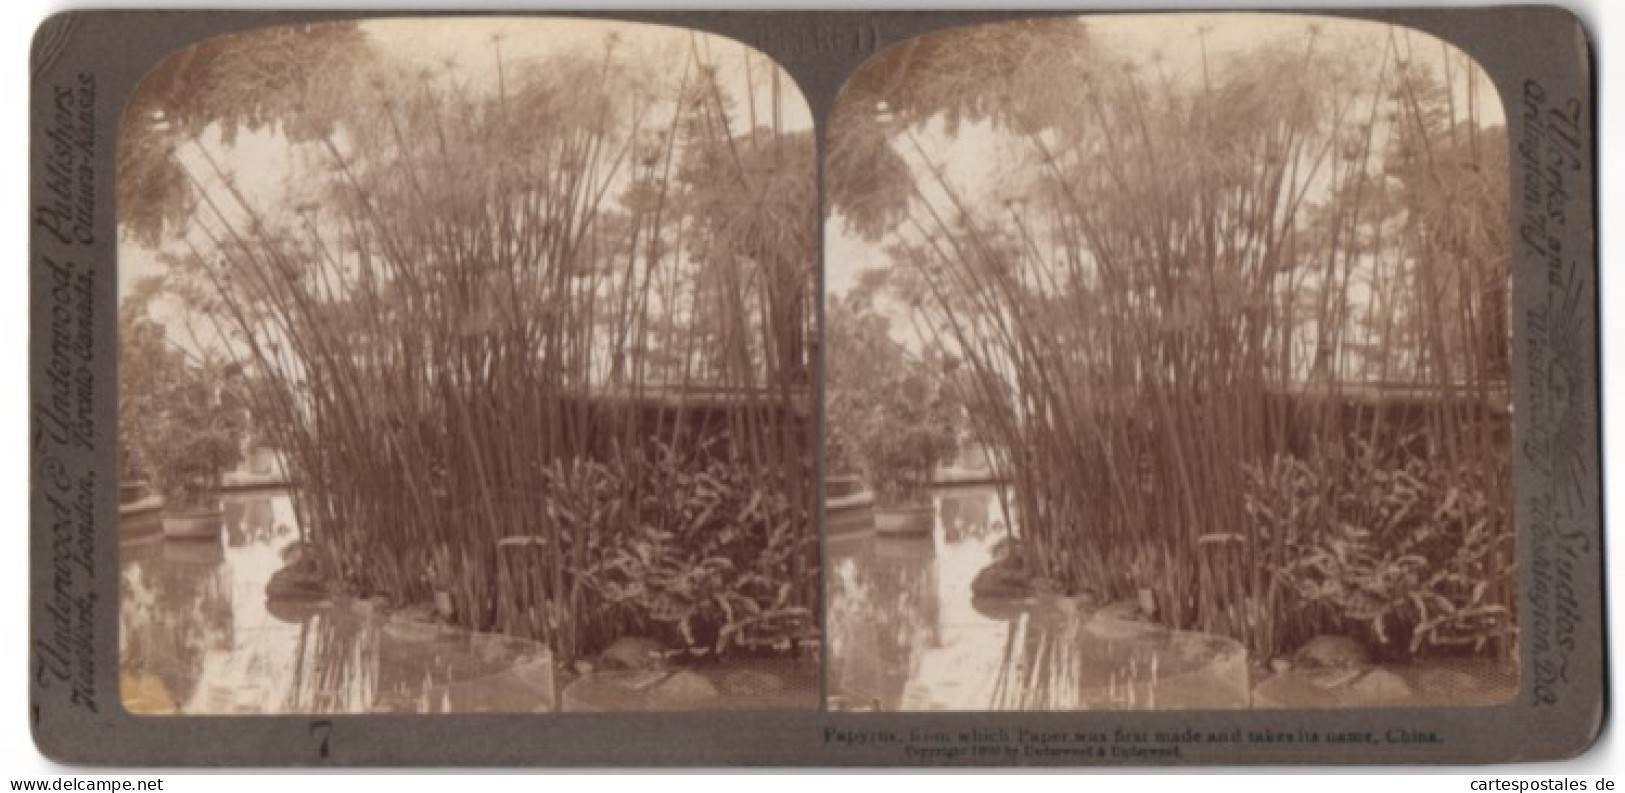 Stereo-Fotografie Underwood & Underwood, New York, Ansicht China, Papyrus-Pflanzen Wachsen Am Teichufer  - Stereo-Photographie